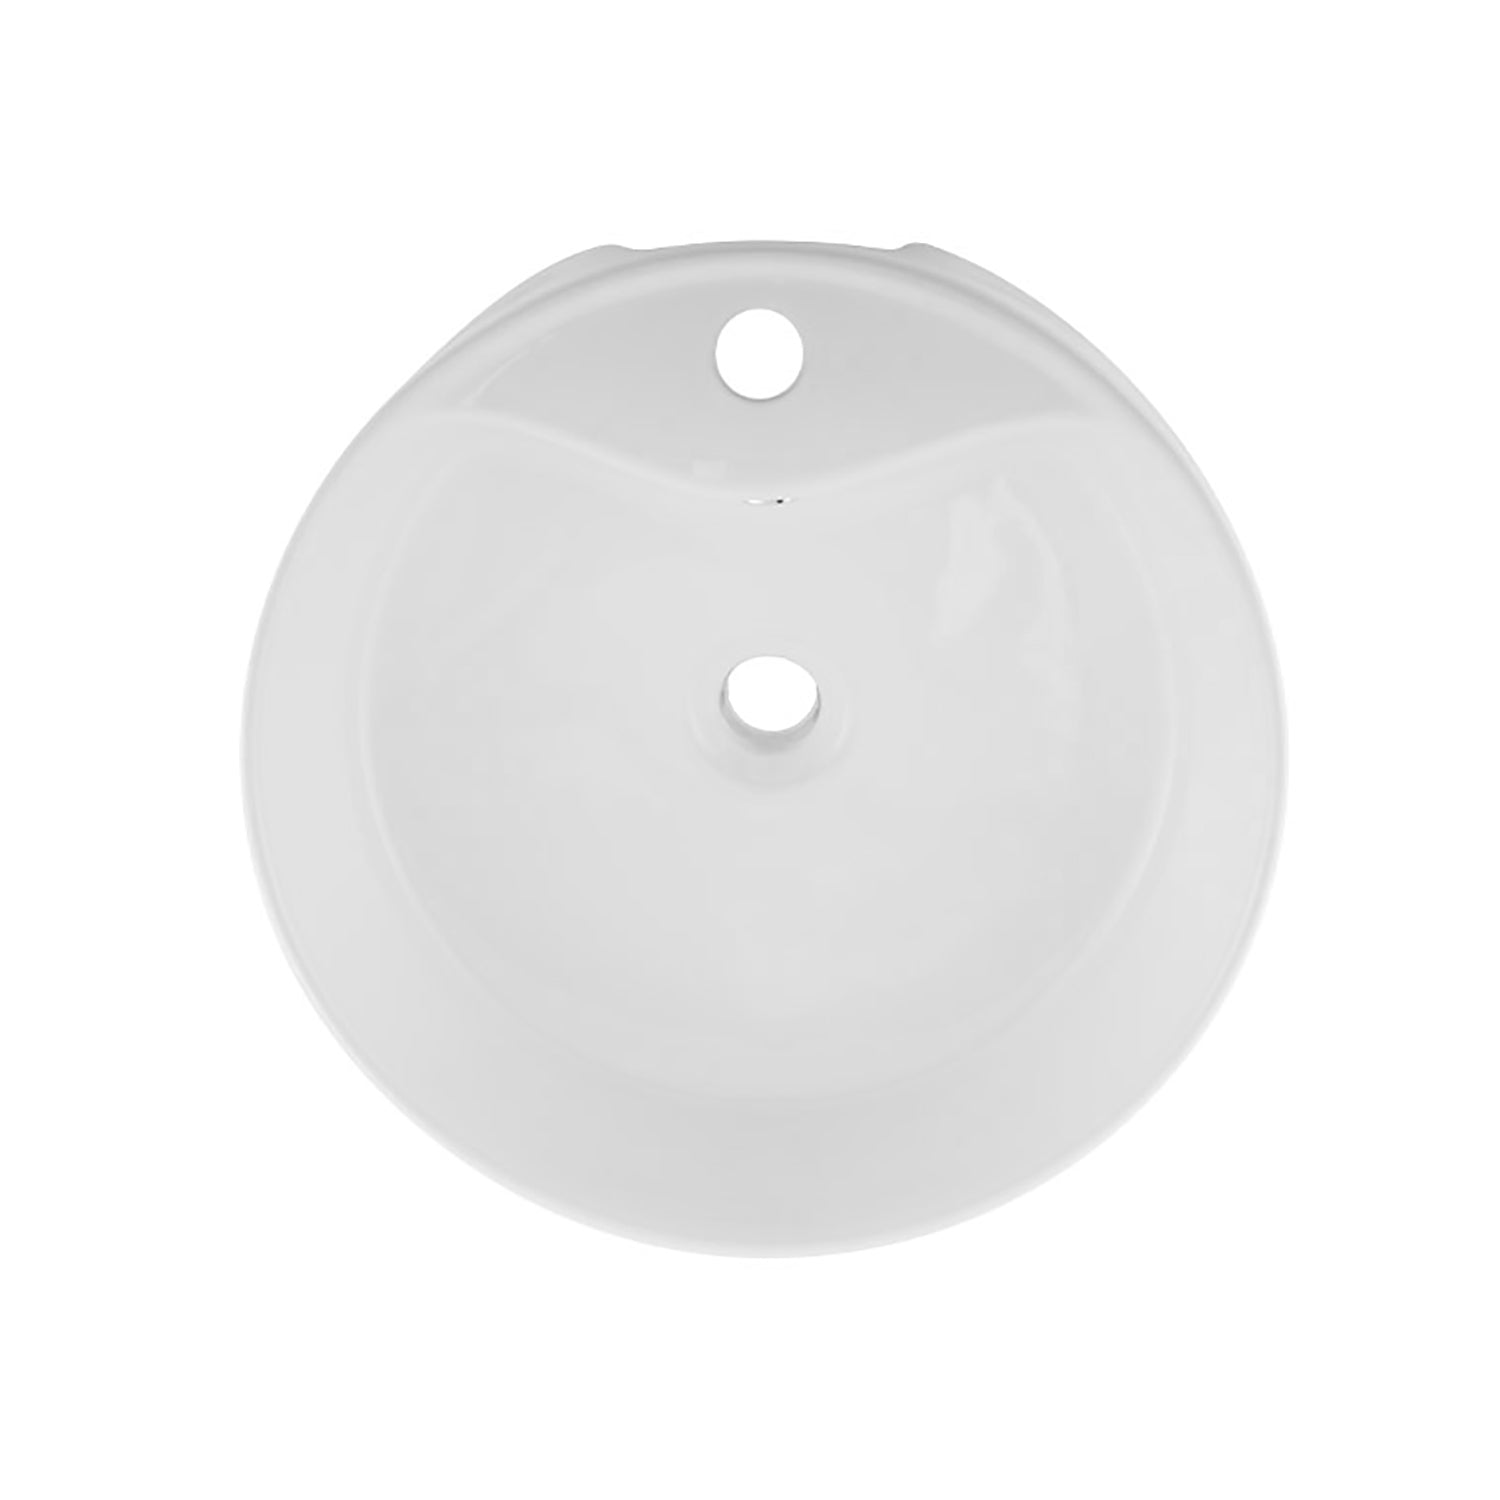 Fregadero de cerámica DAX redondo de un solo recipiente para baño, acabado blanco, Ø 1-7/8" x D 6" pulgadas (BSN-222A)